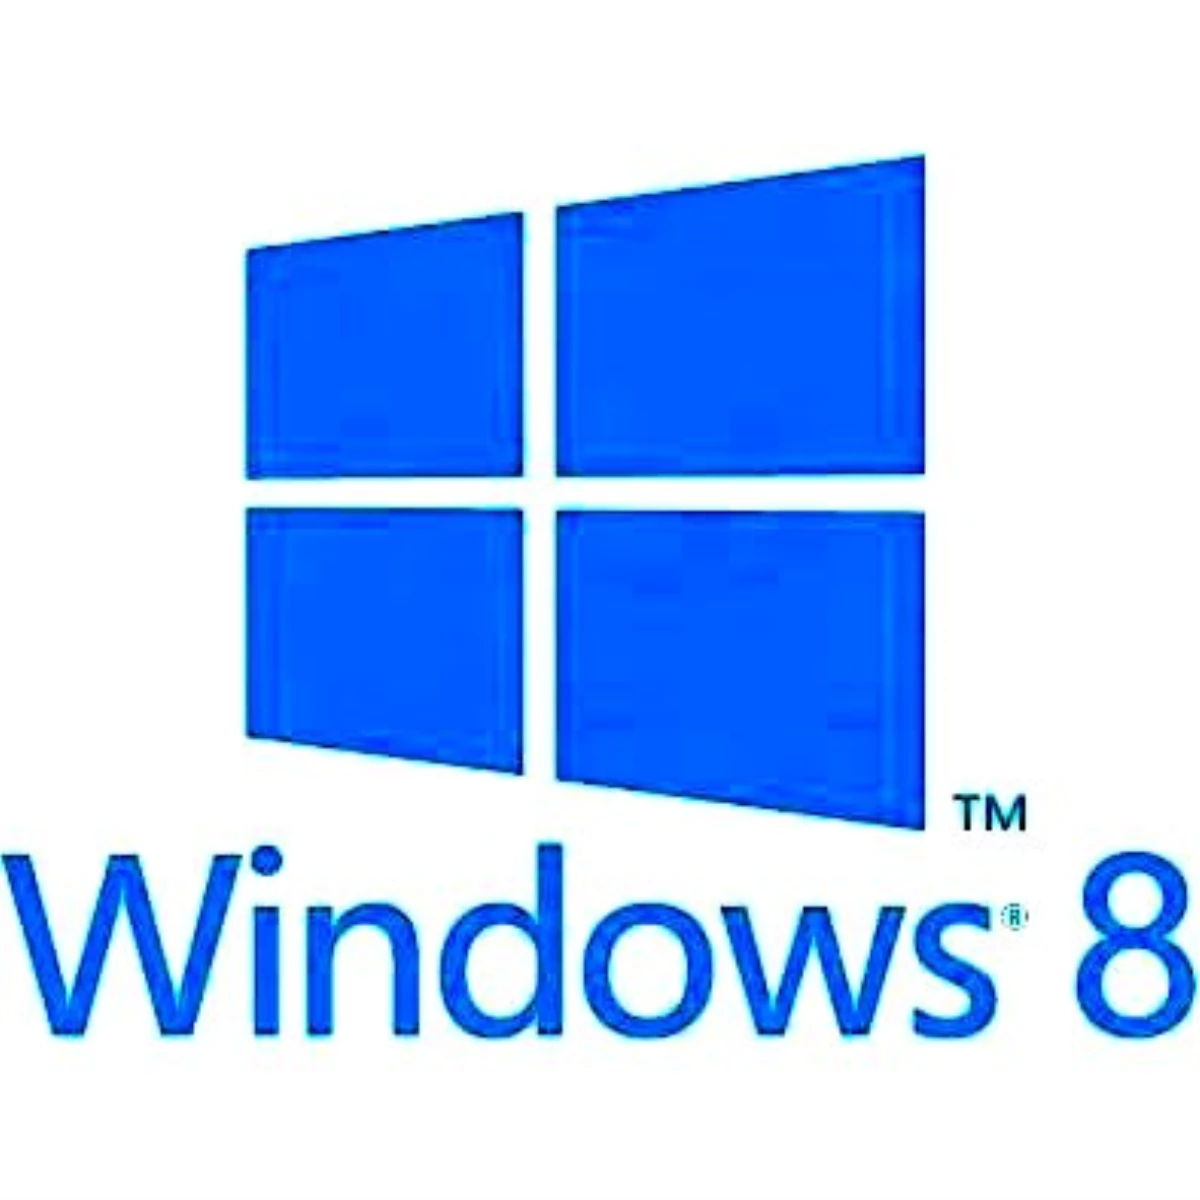 Ve Windows 8 yayında!